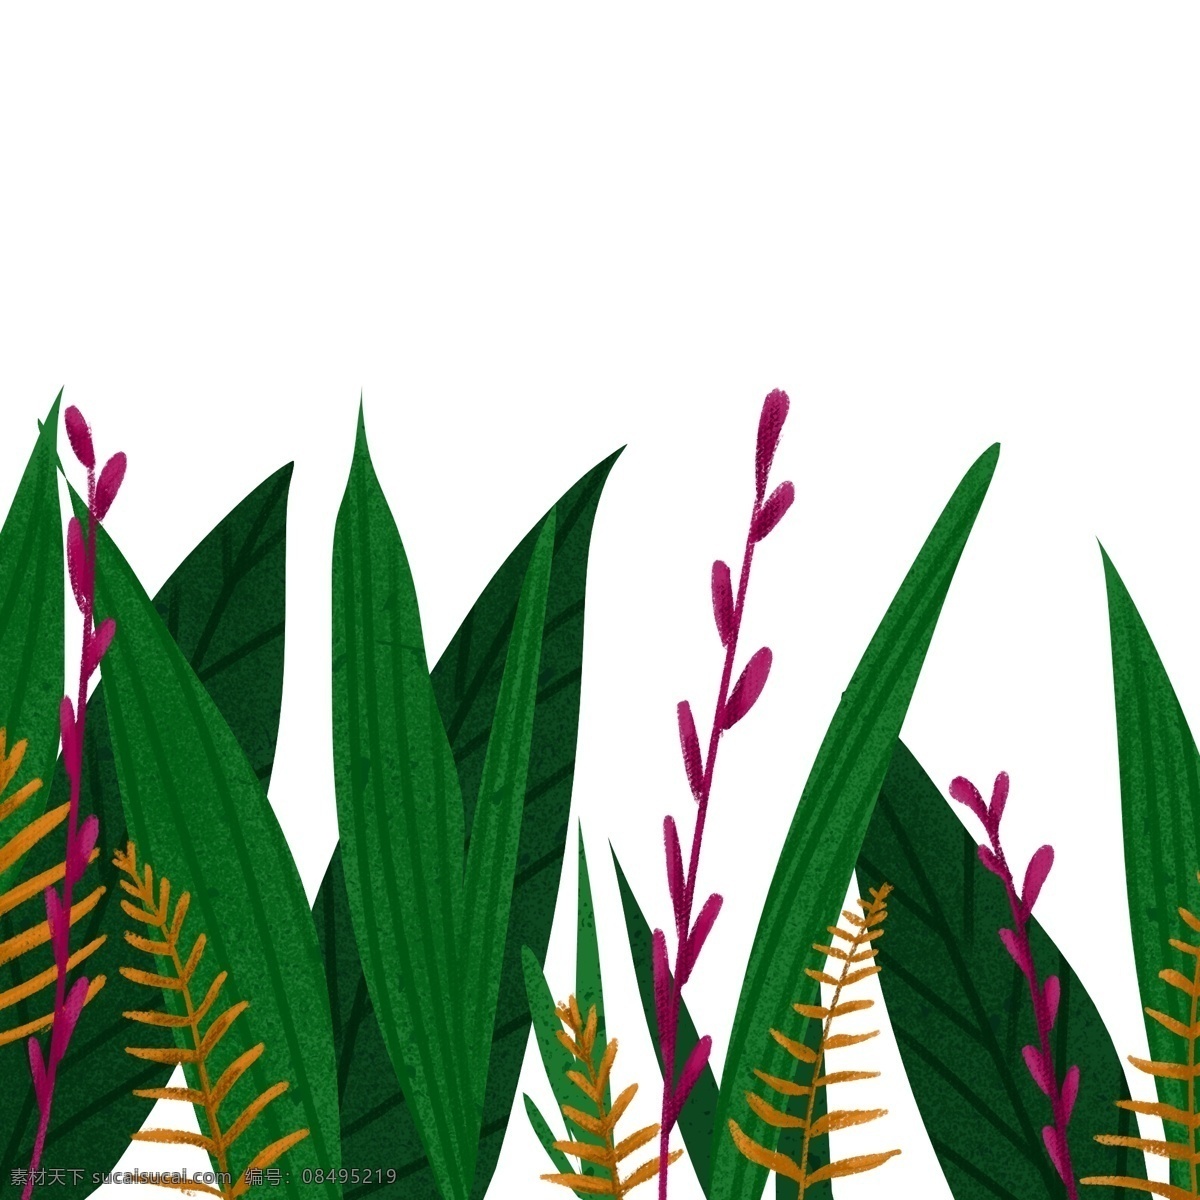 植物 草丛 树叶 插画 卡通 彩色 水彩 创意 手绘 绘画元素 现代 简约 装饰 图案